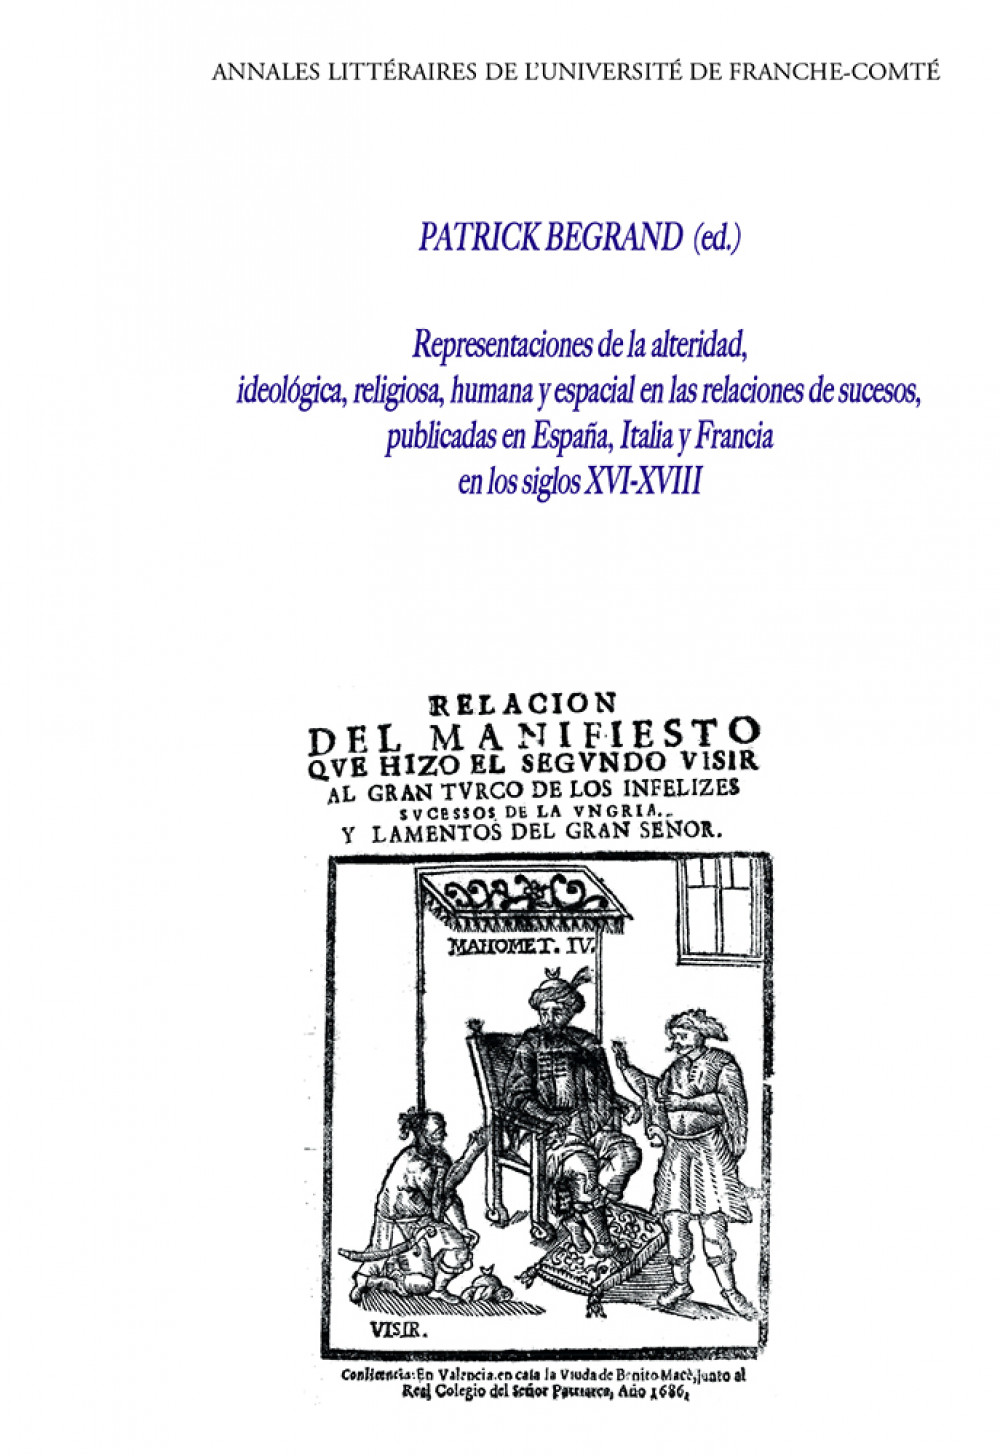 Representaciones de la alteridad, ideológica, religiosa, humana y epacial en las relaciones de sucesos publicadas en España, Italia y Francia en los siglos XVI-XVIII